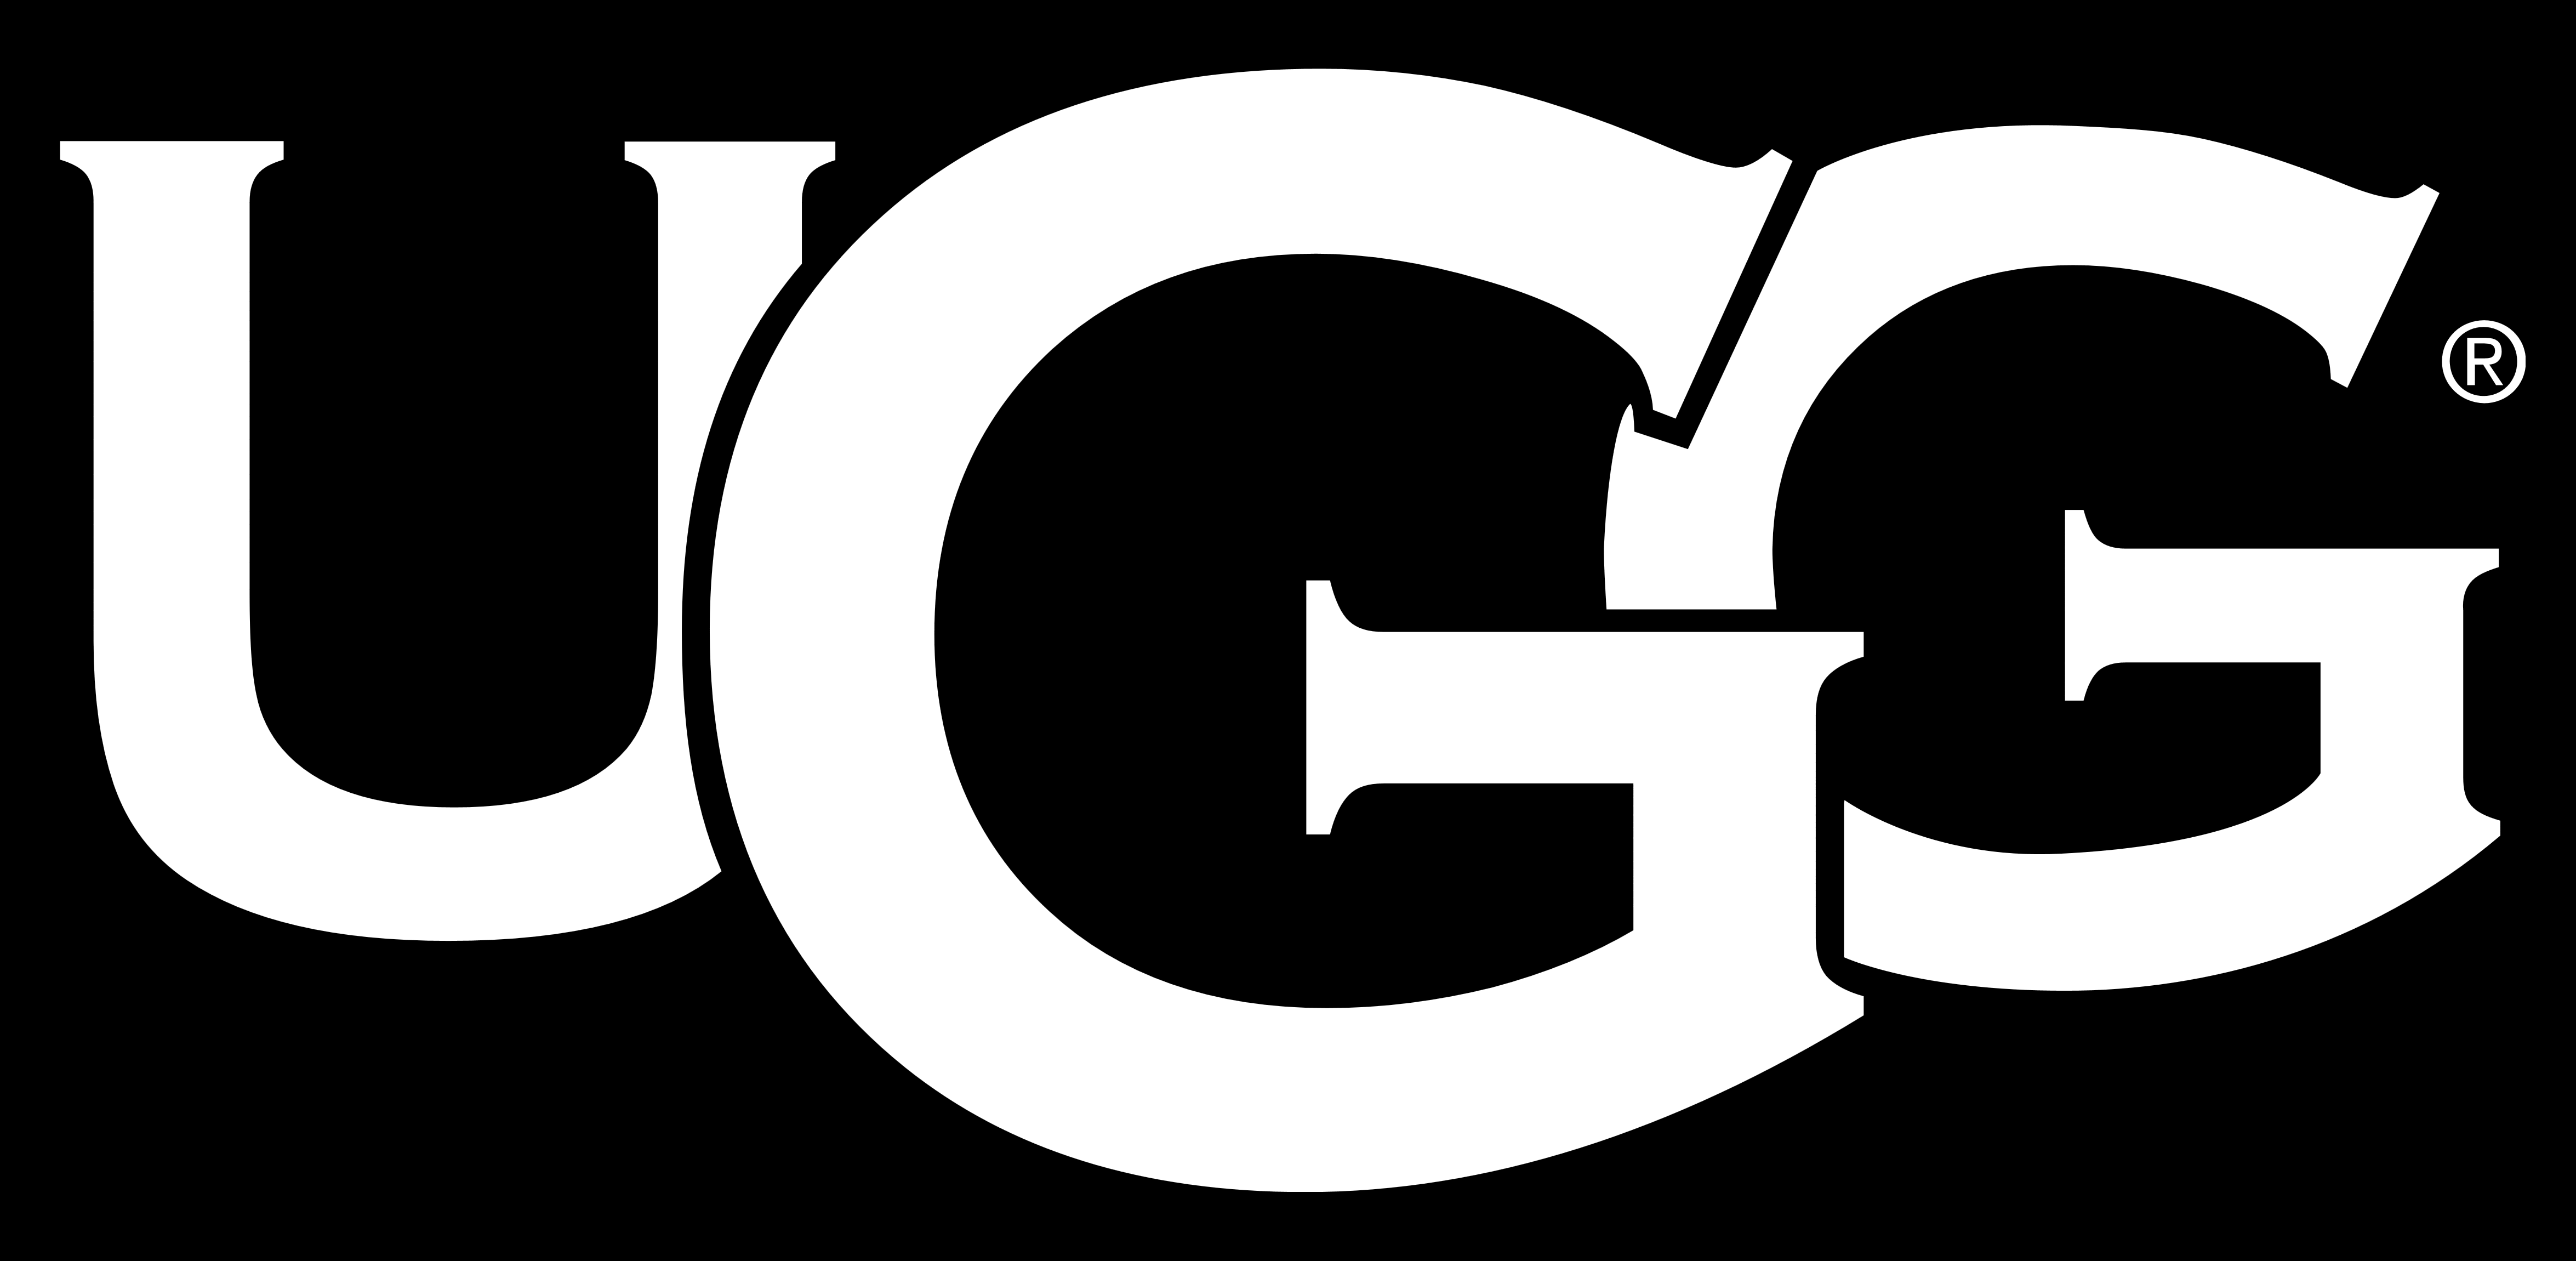 Ugg Logos